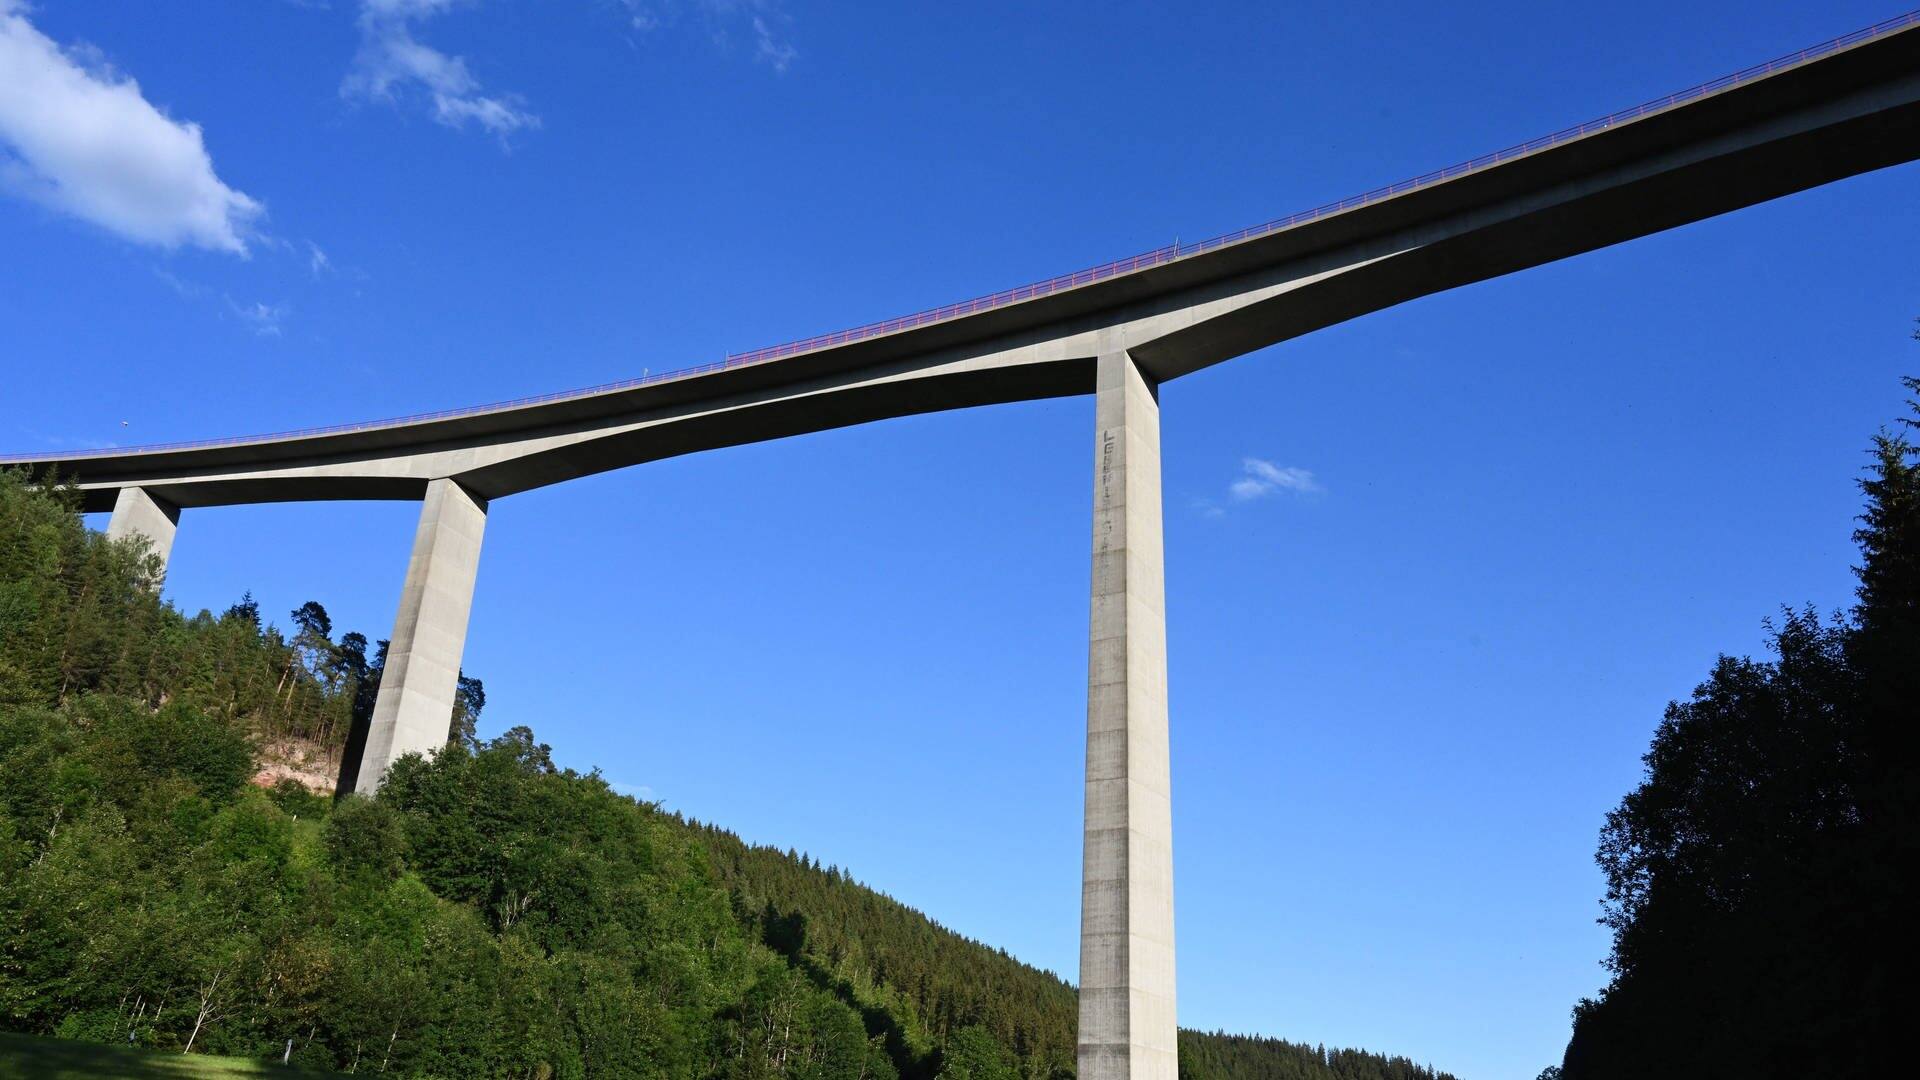 Gutachtalbrücke ist die höchste Brücke im Schwarzwald und Bestandteil der Bundesstraße 31 östlich von Titisee-Neustadt. (Foto: IMAGO, IMAGO / Petra Schneider)